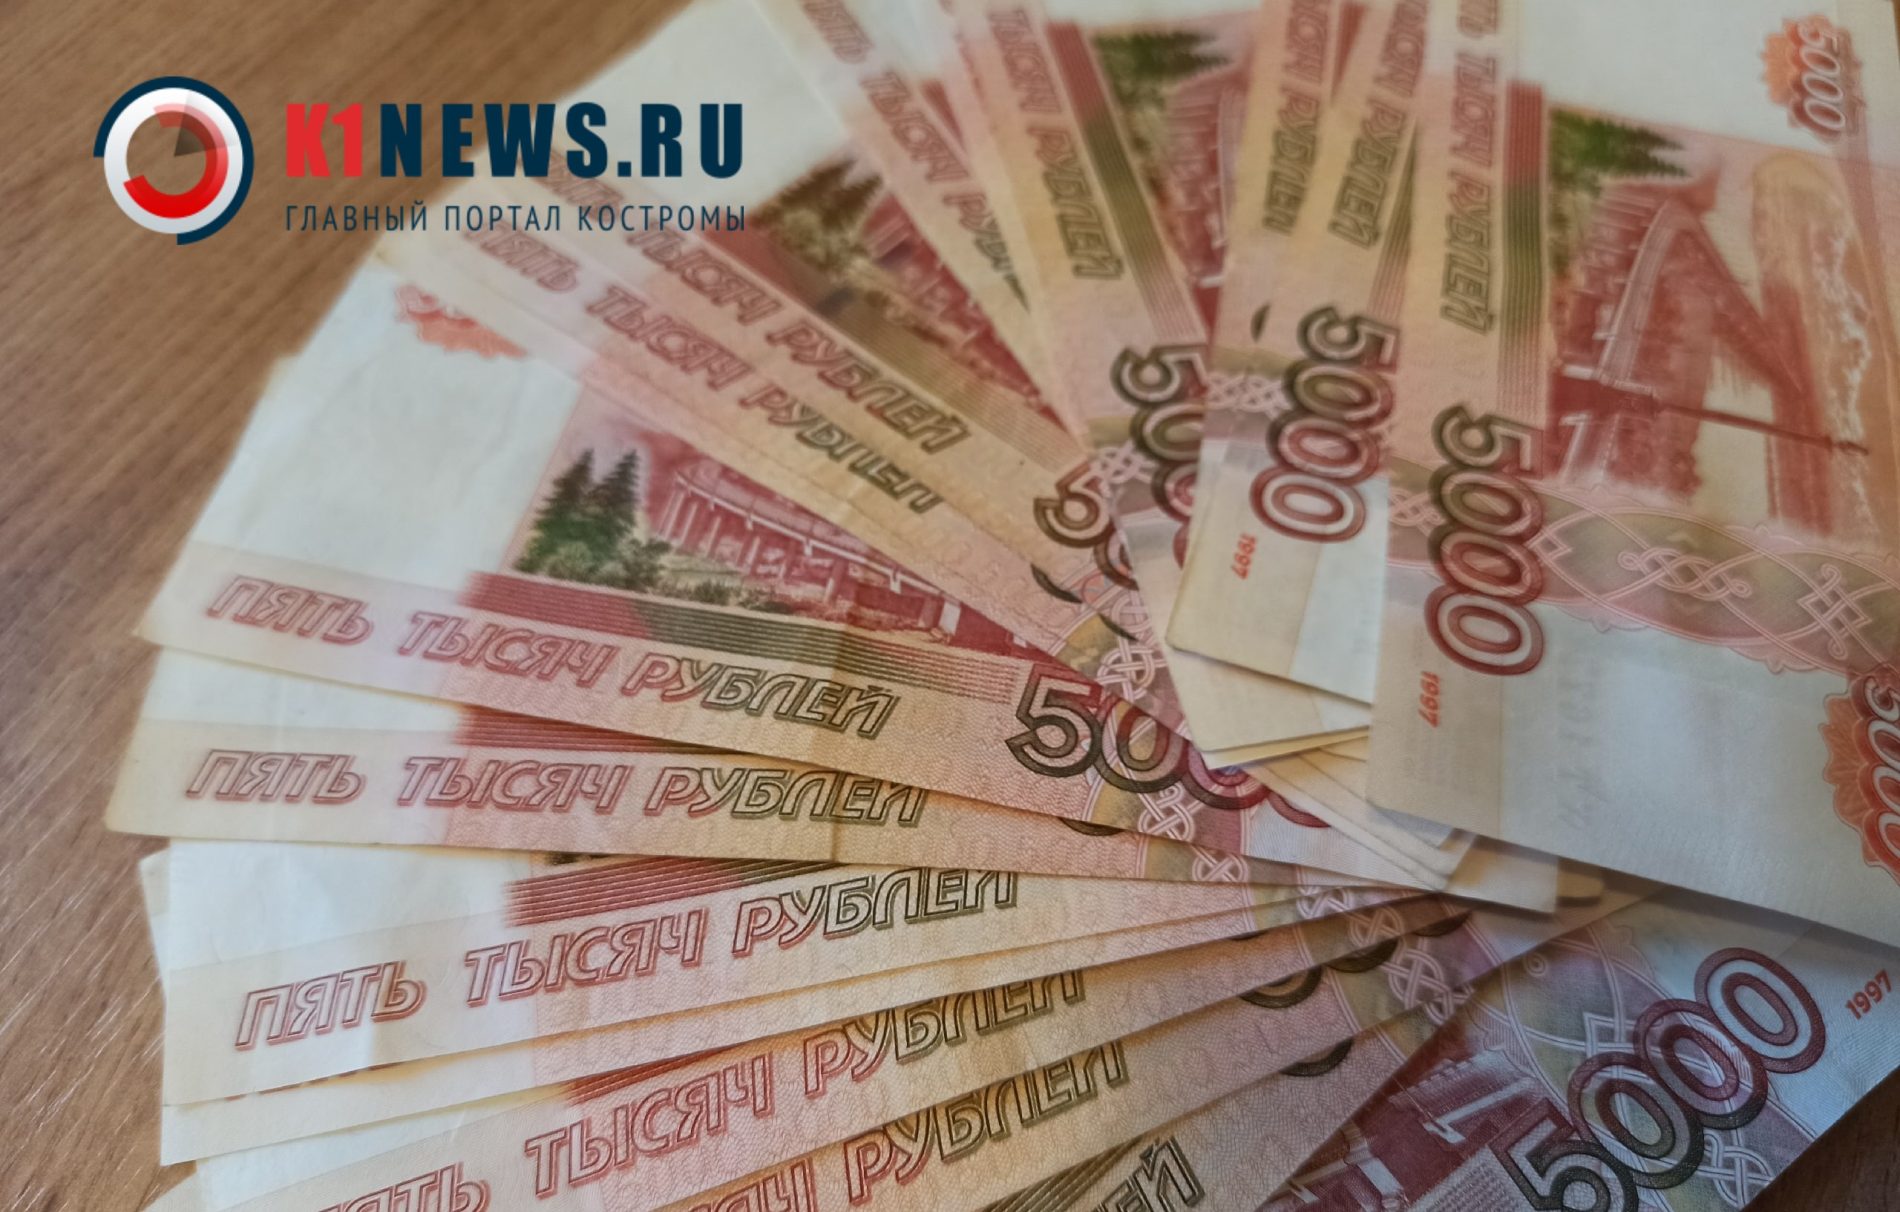 Больше миллиона рублей украли при строительстве больницы в Костромской области